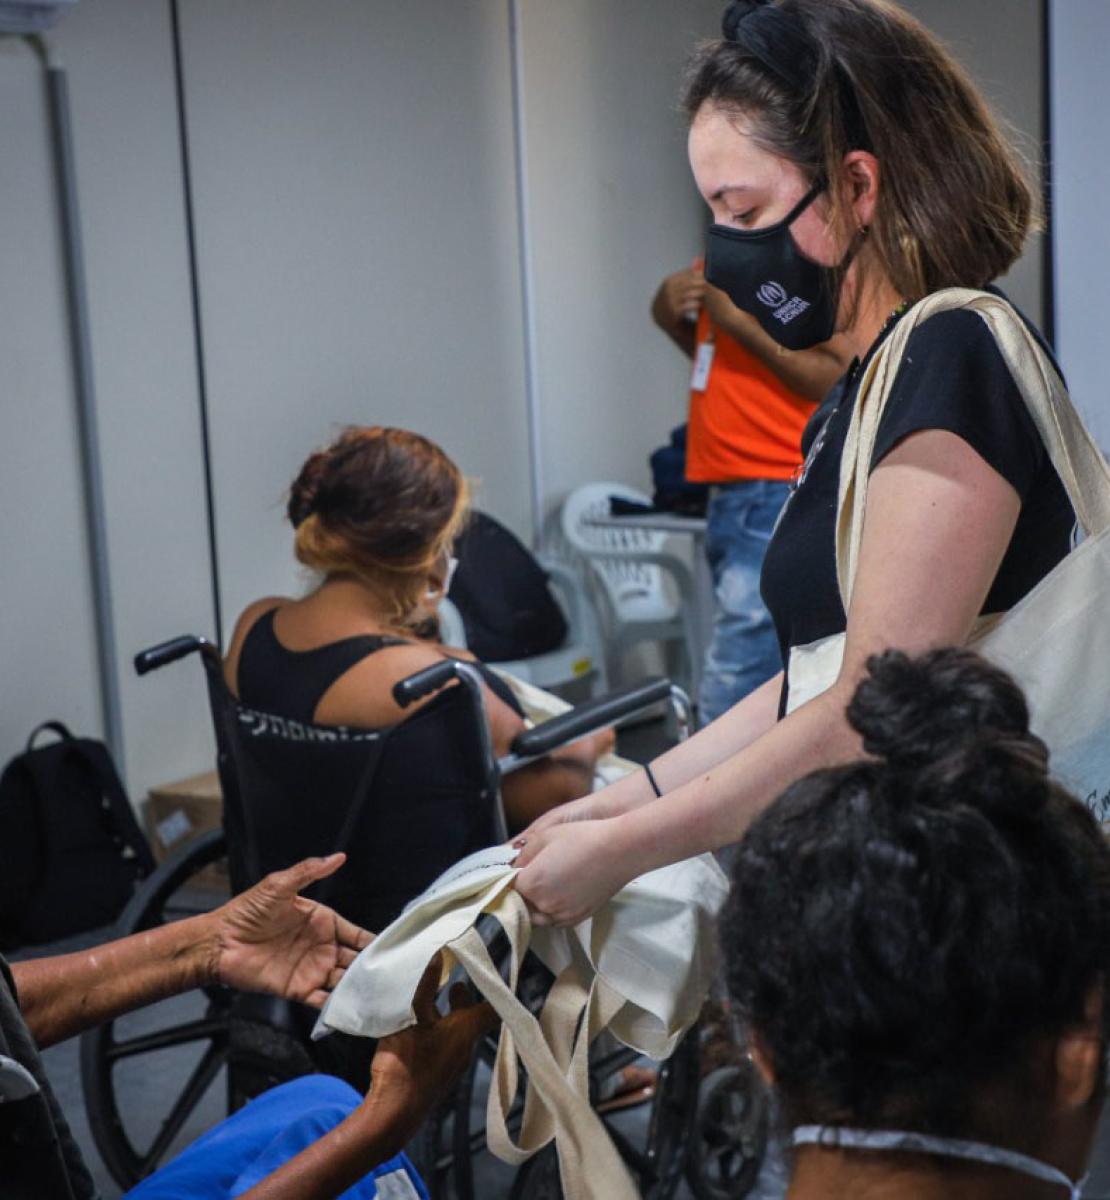 Plusieurs femmes, dont certaines en fauteuil roulant, sont réunies dans une salle pour recevoir une formation. Une femme membre du HCR portant un masque de protection tend à l’une des participantes un sac fourre-tout en tissu.